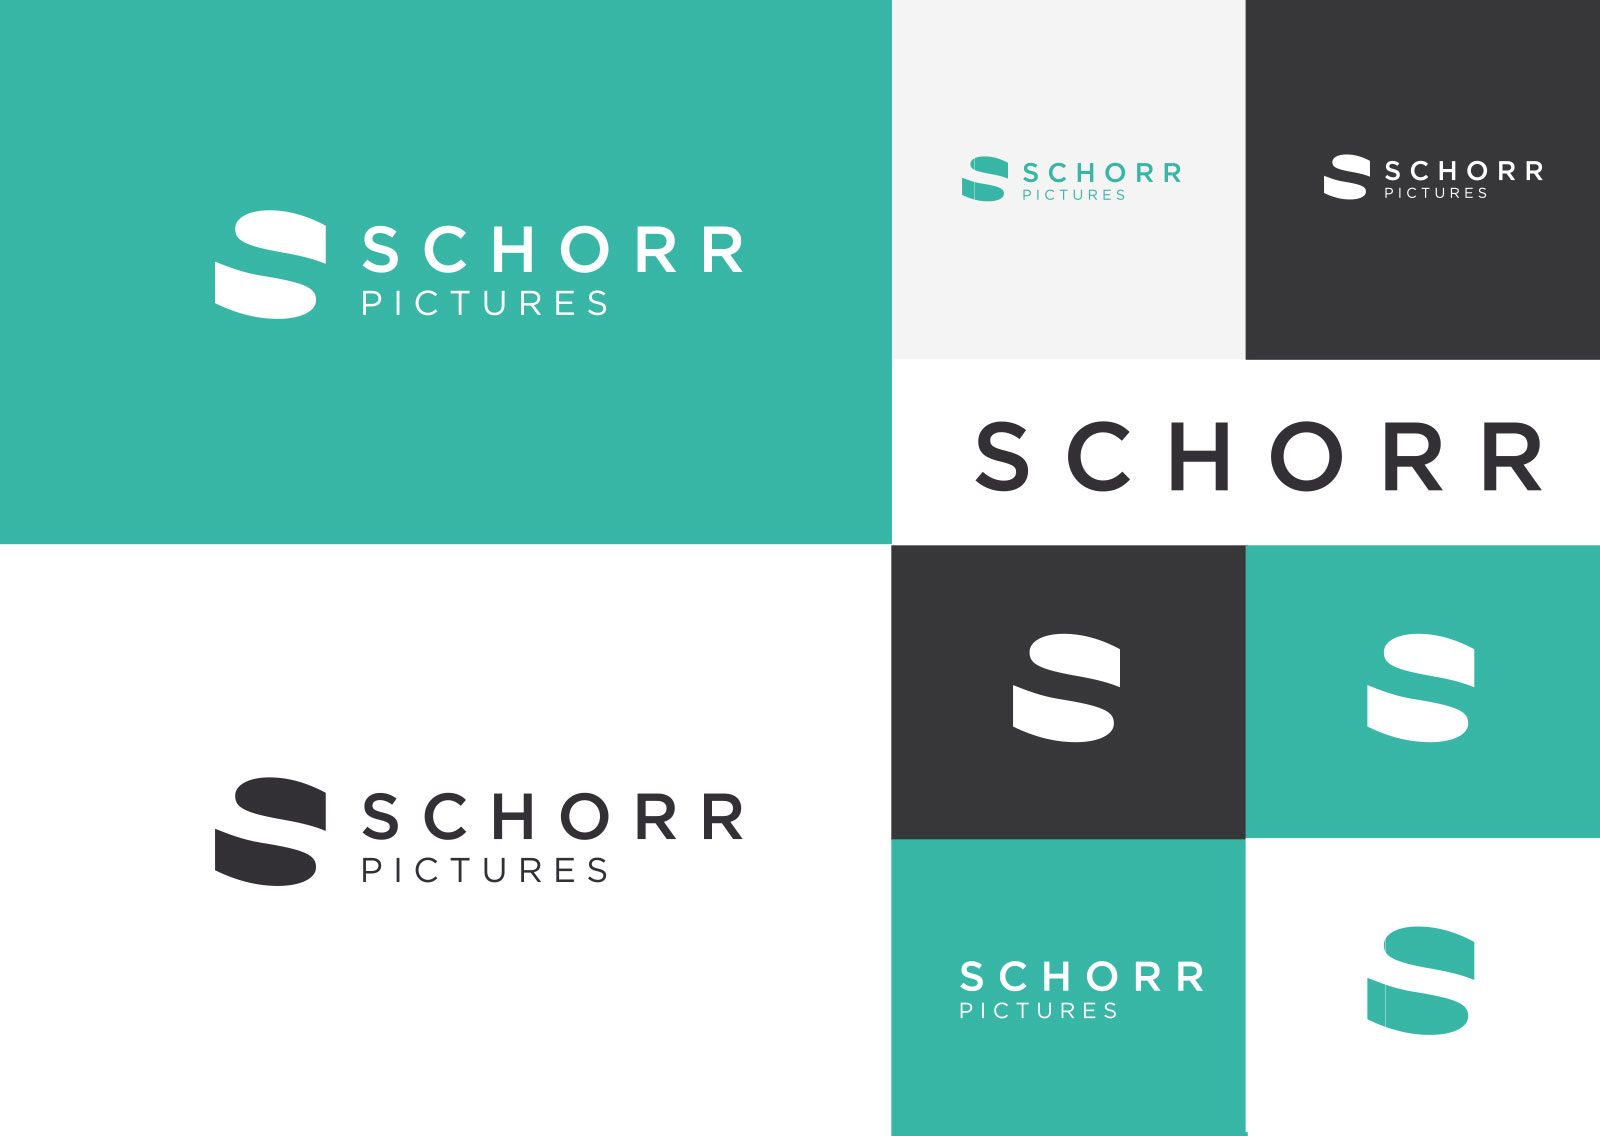 Schorr_1